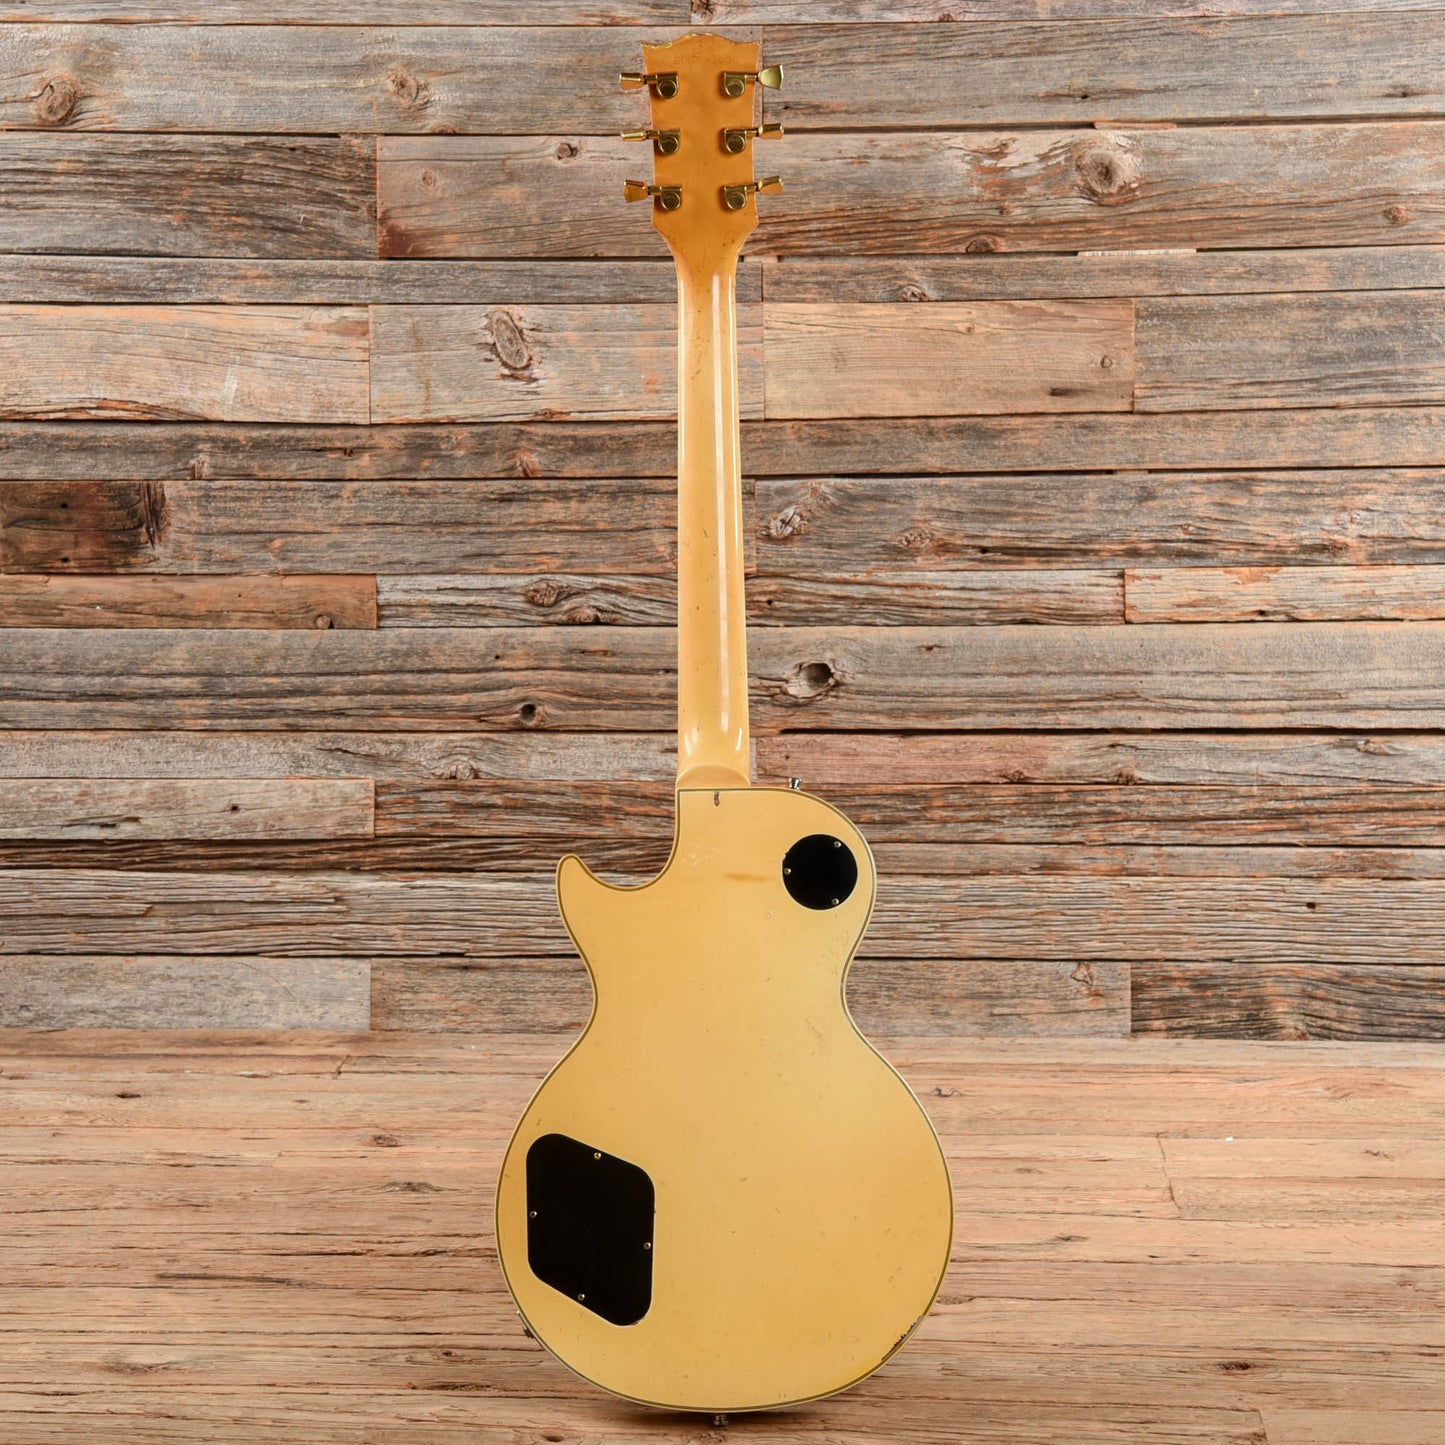 Gibson Les Paul Custom White 1989